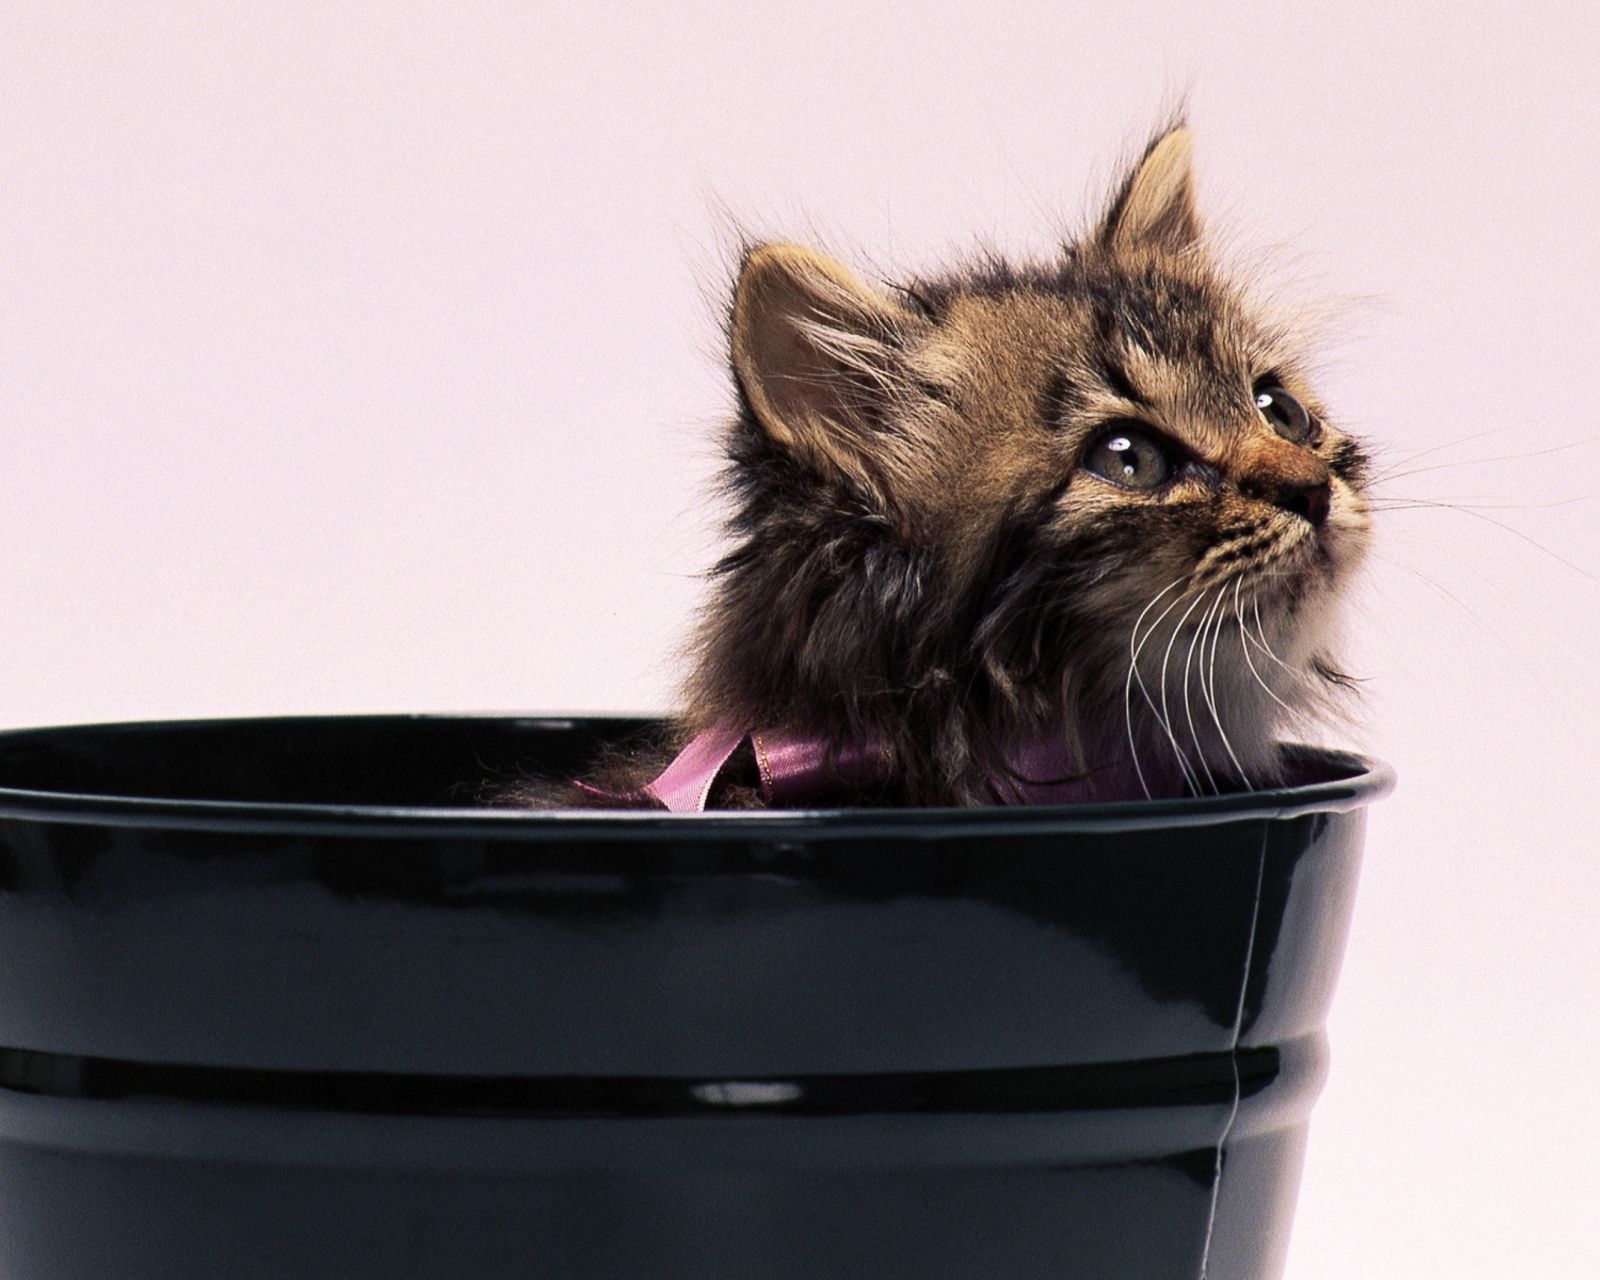 Sweet Kitten In Bucket wallpaper 1600x1280